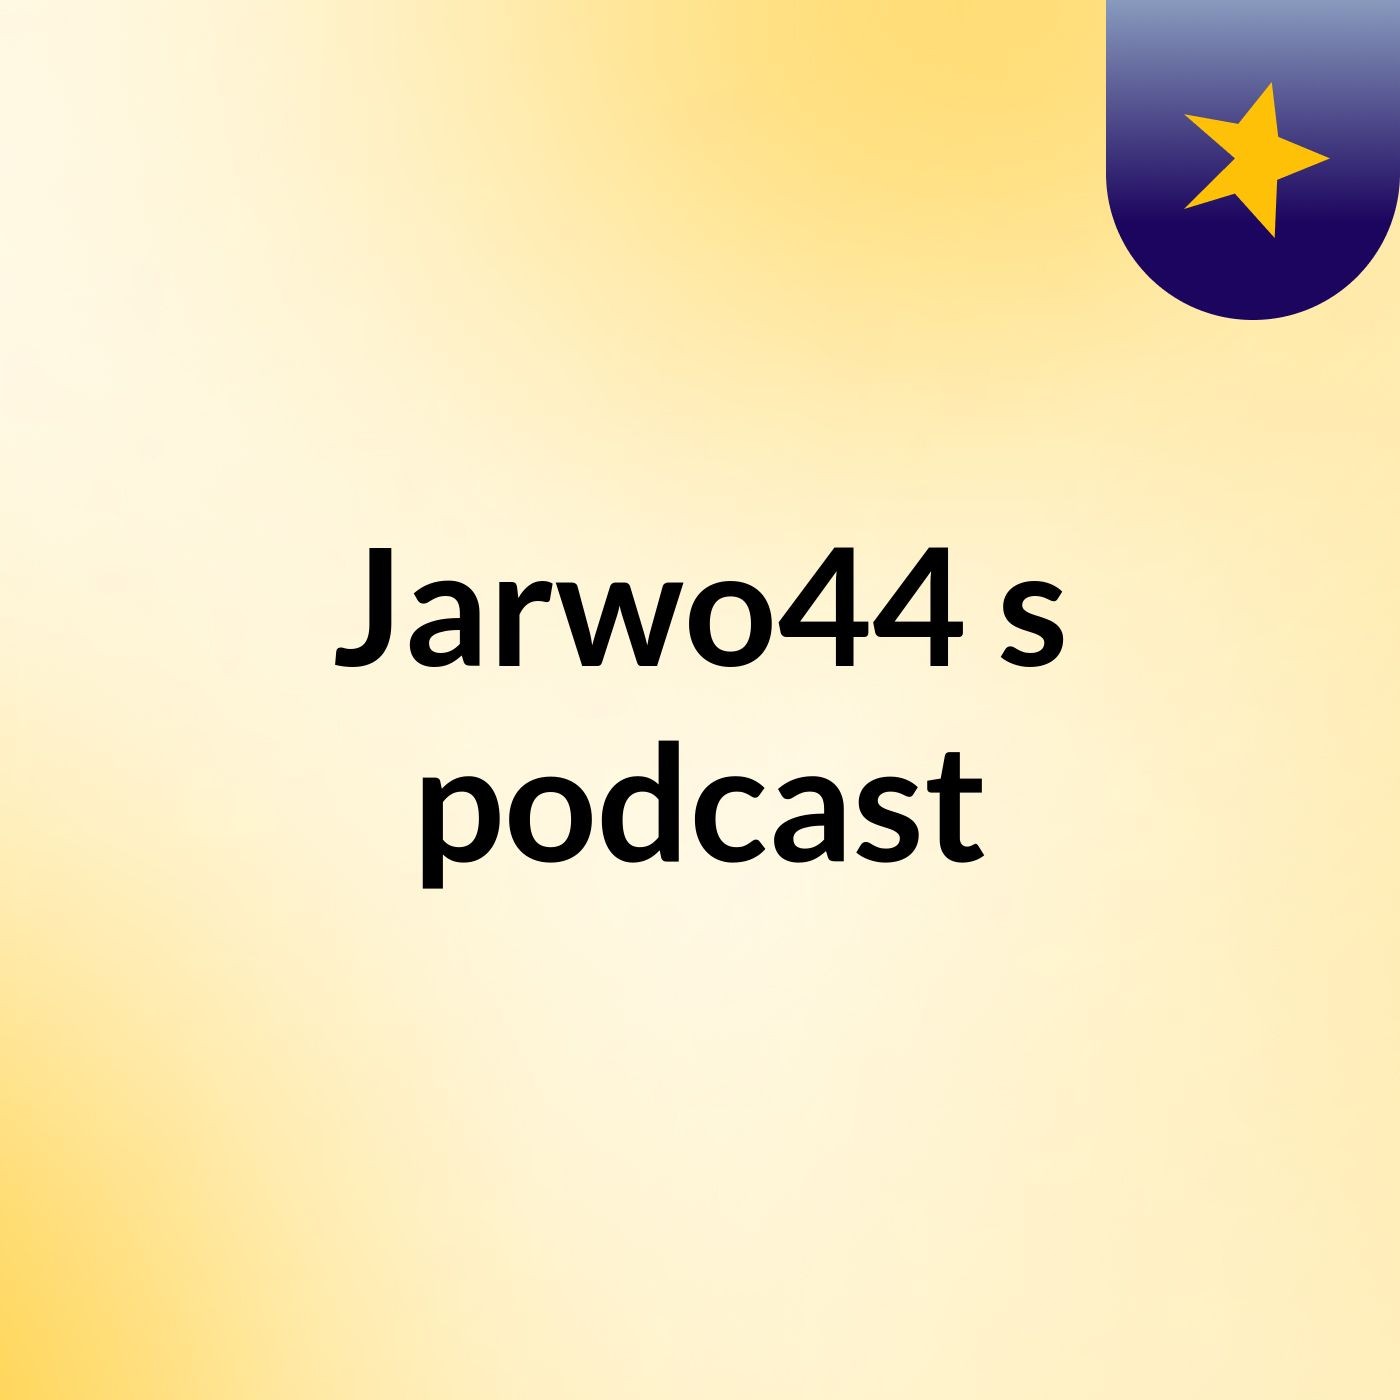 Episode 5 - Jarwo44's podcast